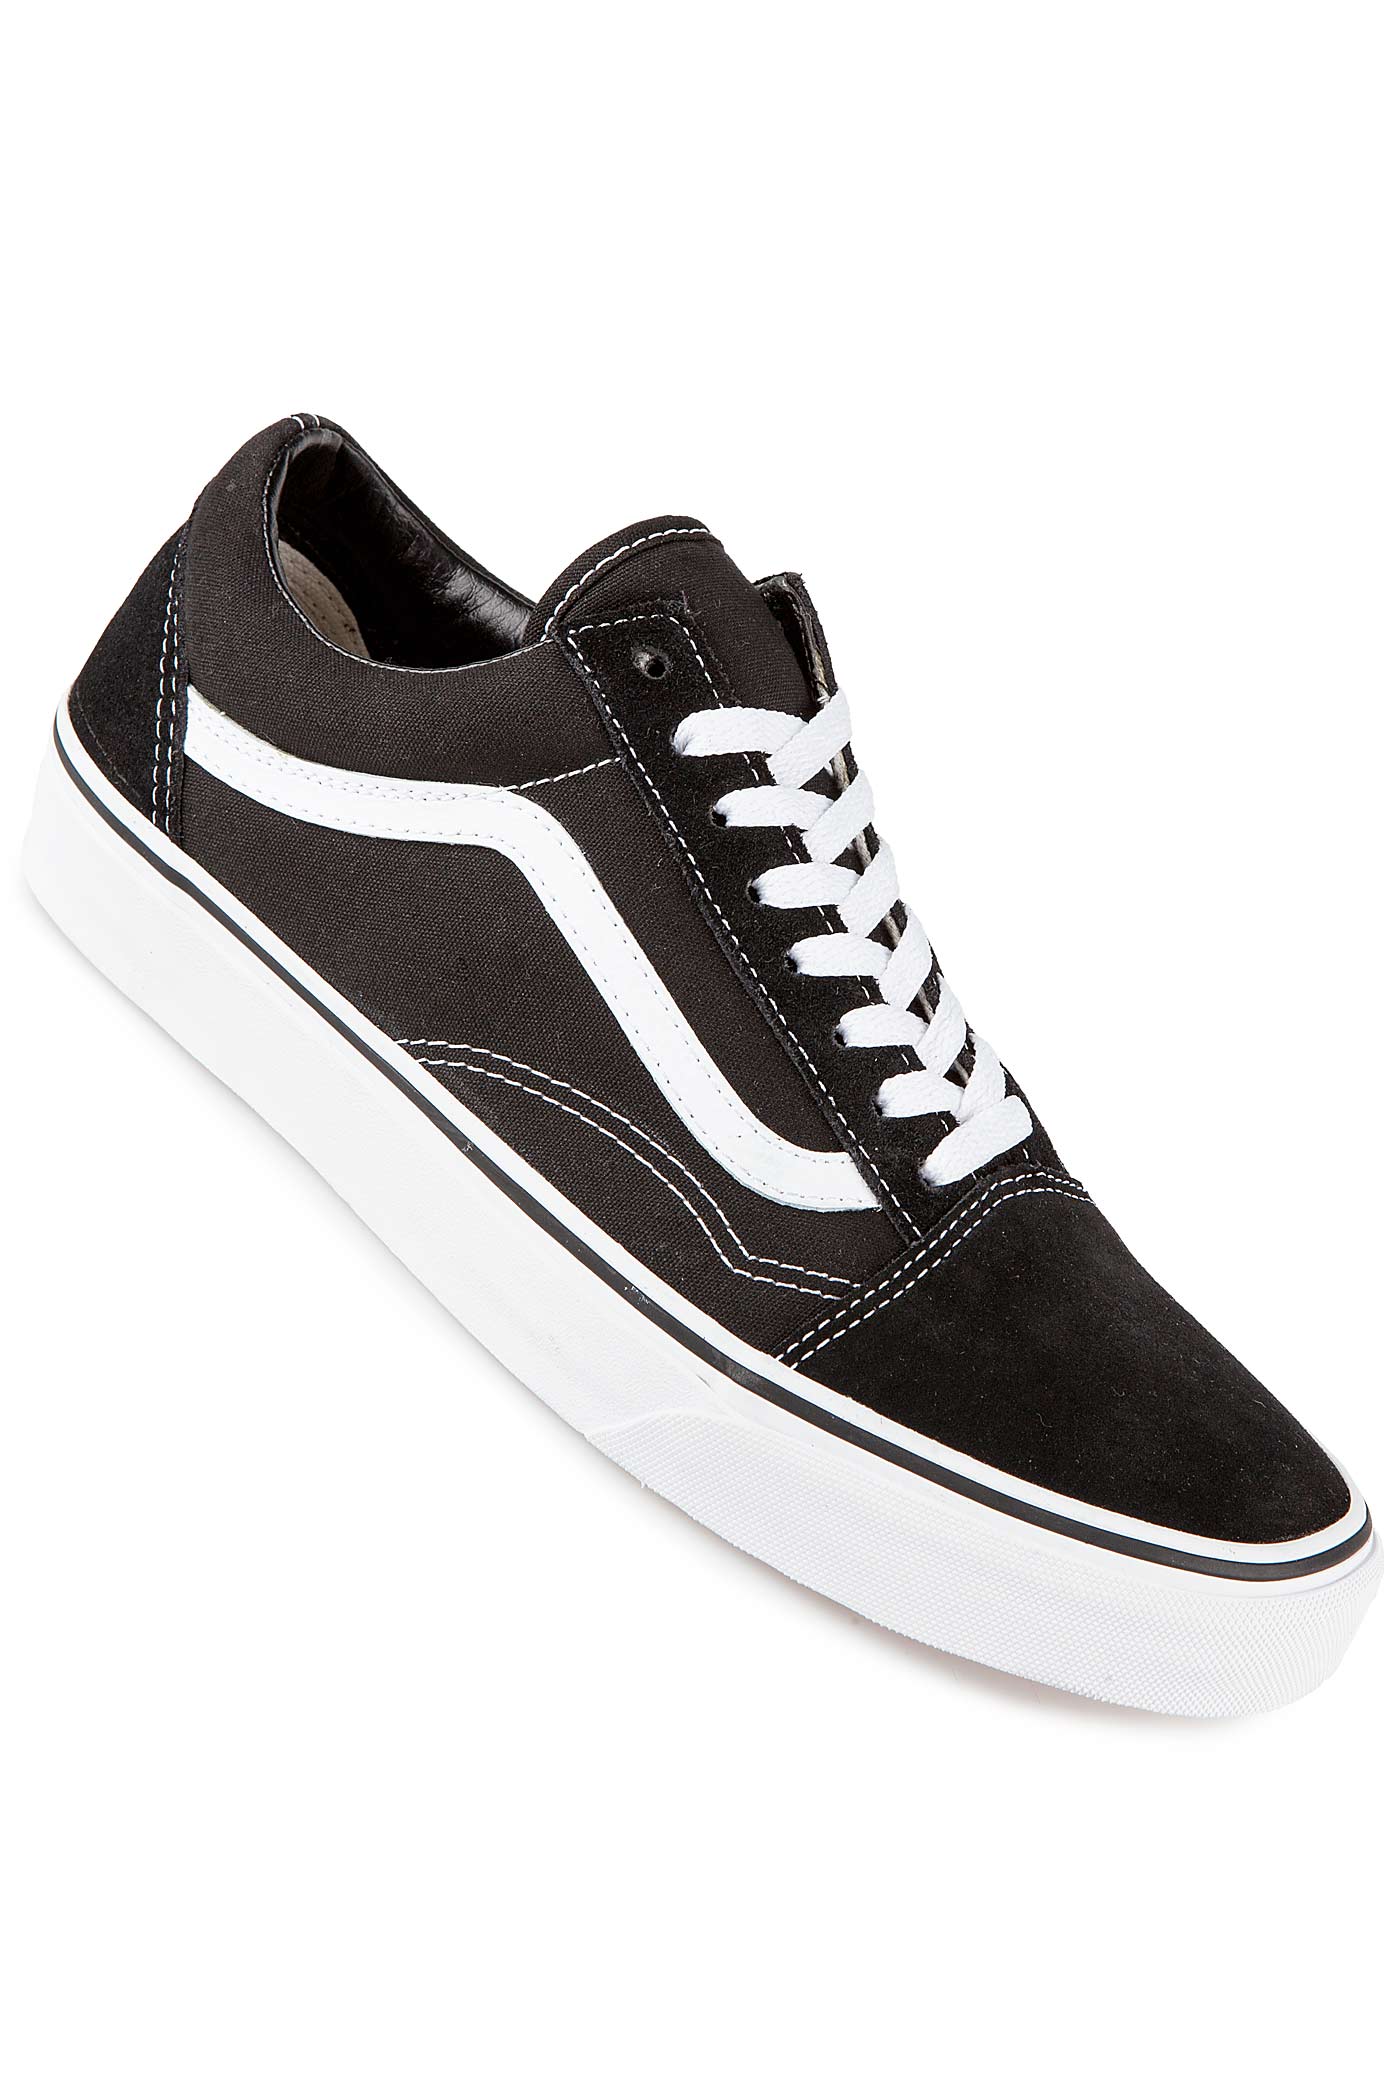 Vans Skool Mix Black, Grey Skate Shoes